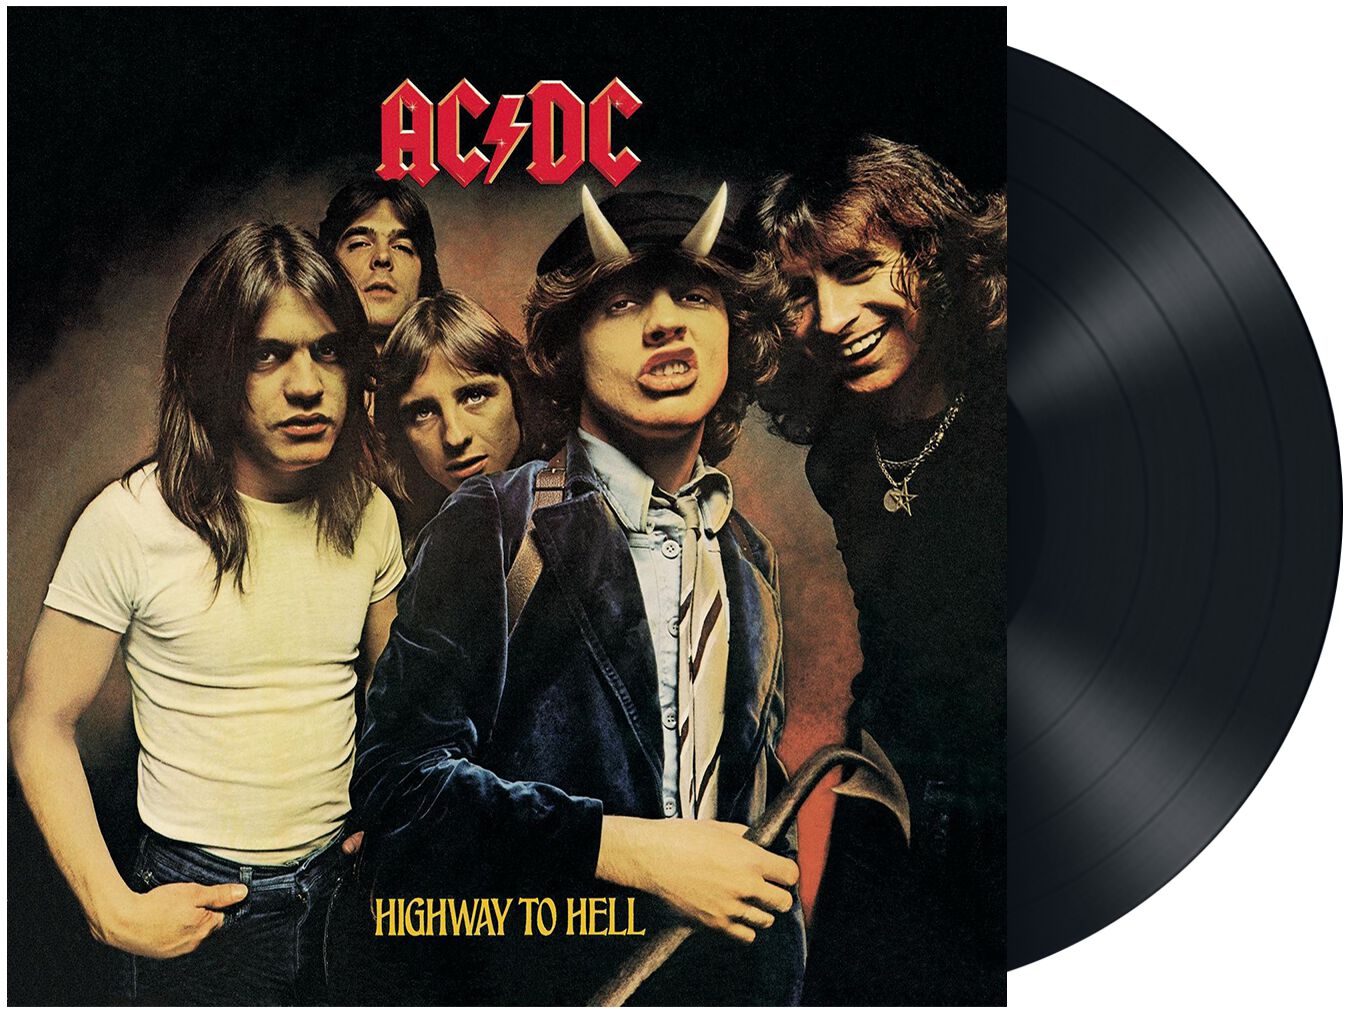 Acdc highway to hell. AC DC Highway to Hell 1979. AC DC Highway to Hell 1979 обложка. Постеры рок групп в большом размере. AC DC Highway to Hell альбом.